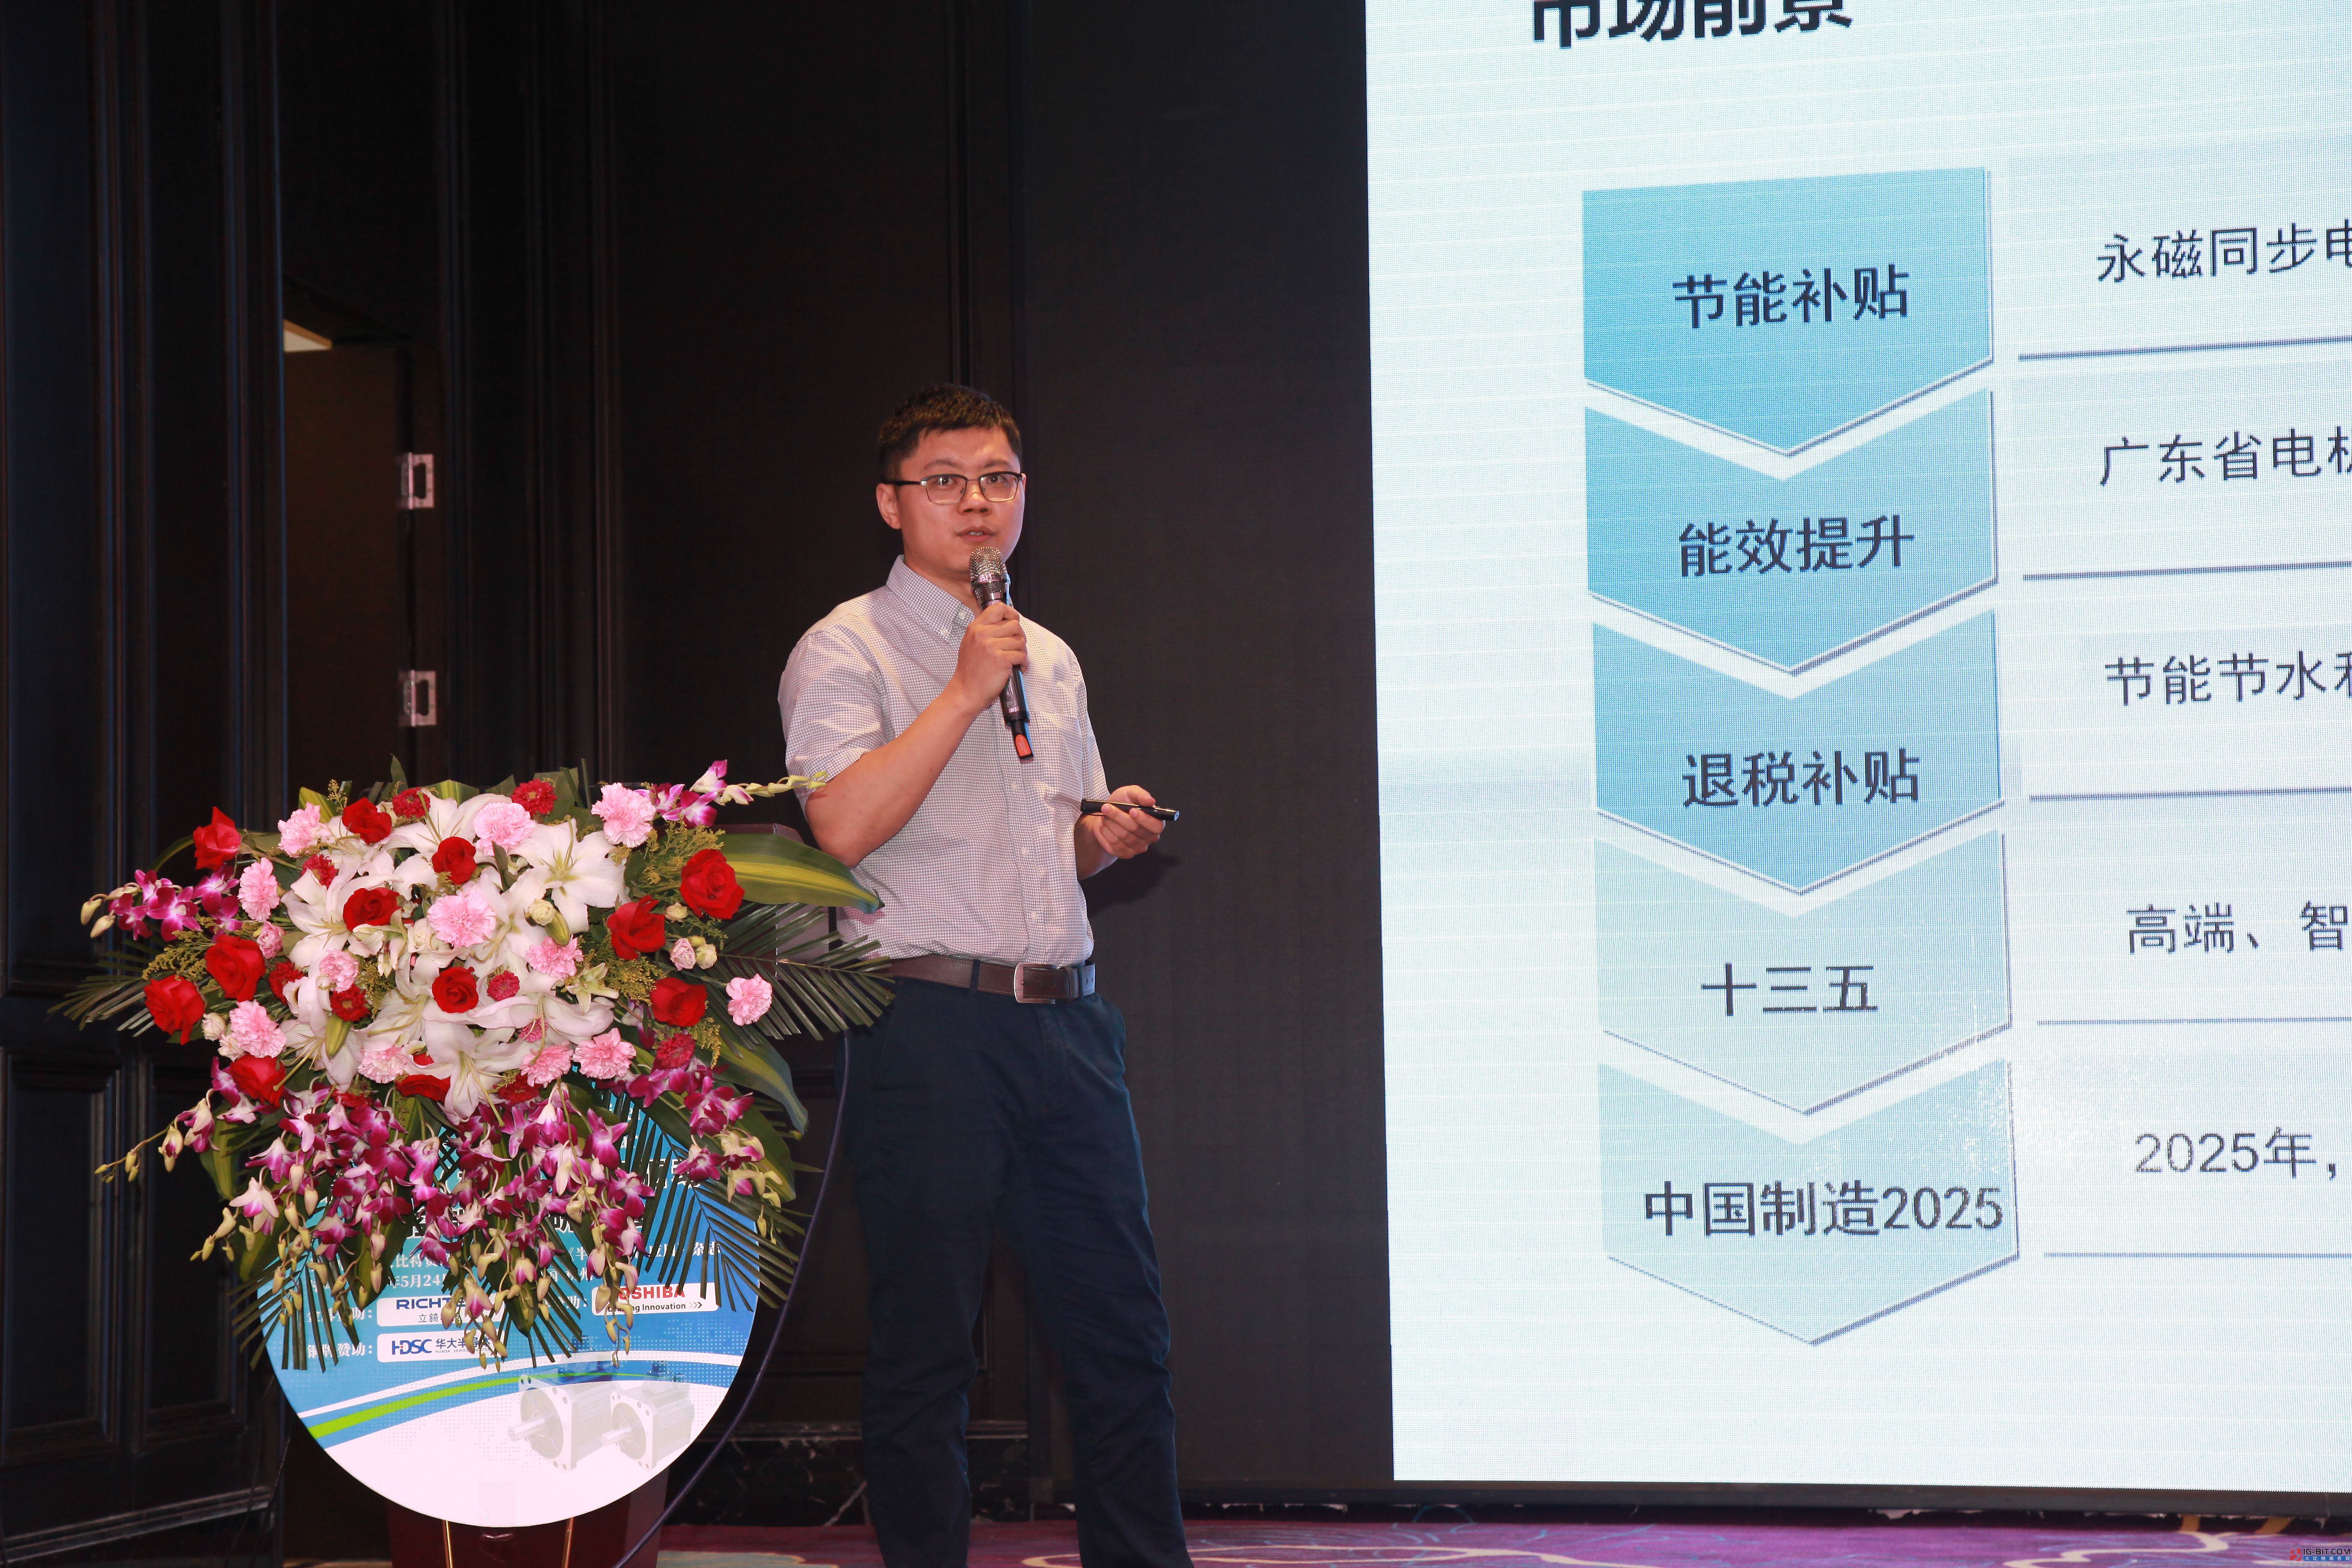 450名精英汇聚 “第十届(杭州)电机驱动与控制技术研讨会”圆满落幕